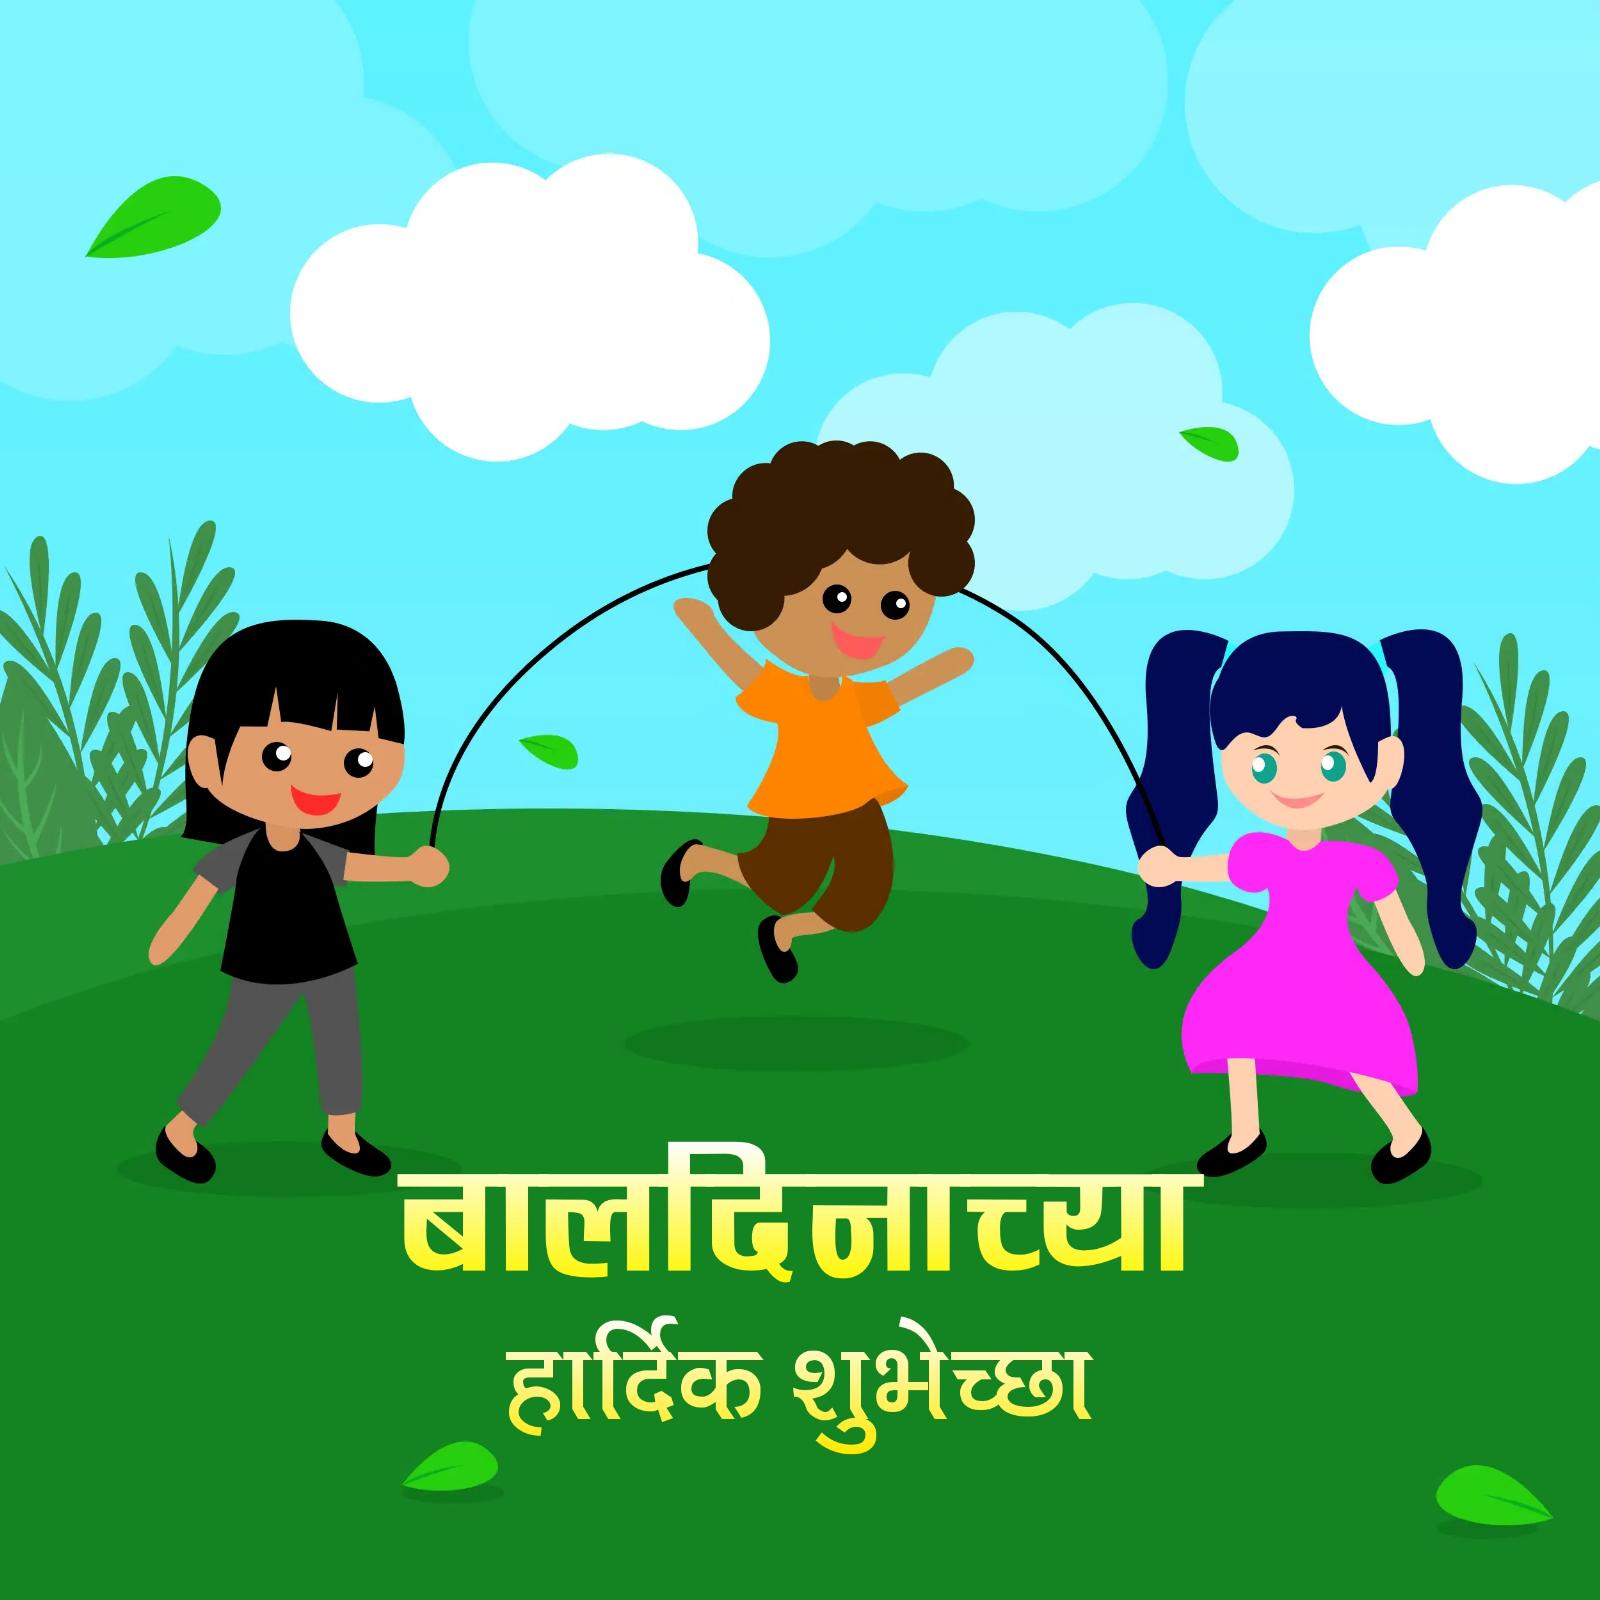 Happy Childrens Day Images In Marathi - ShayariMaza